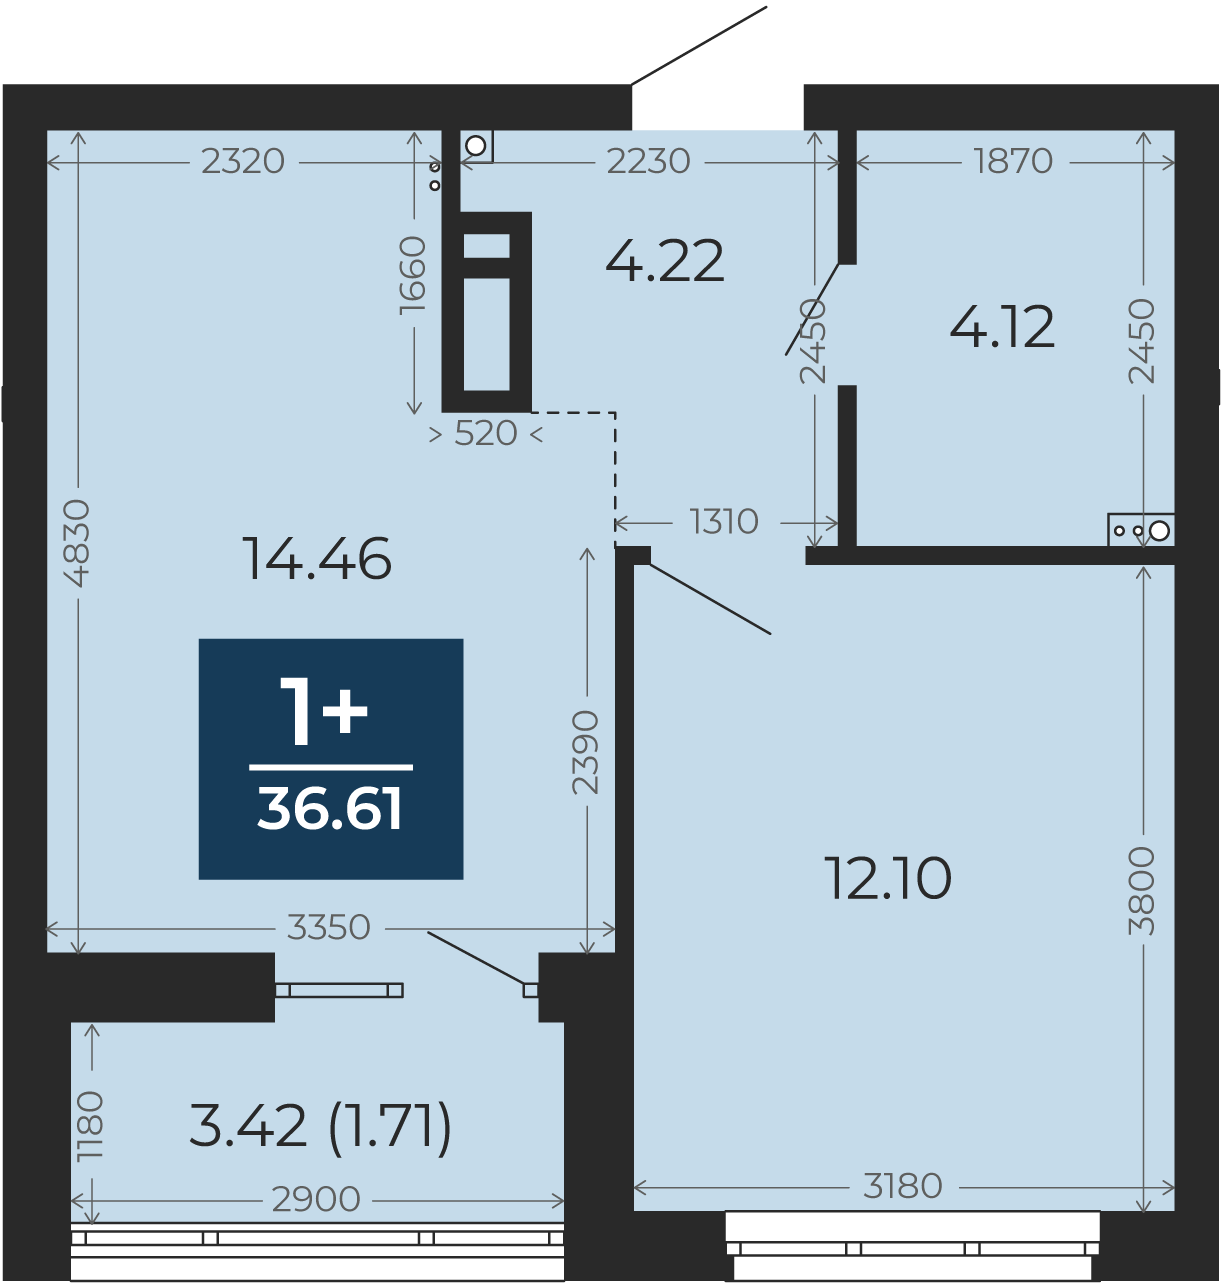 Квартира № 190, 1-комнатная, 36.61 кв. м, 2 этаж